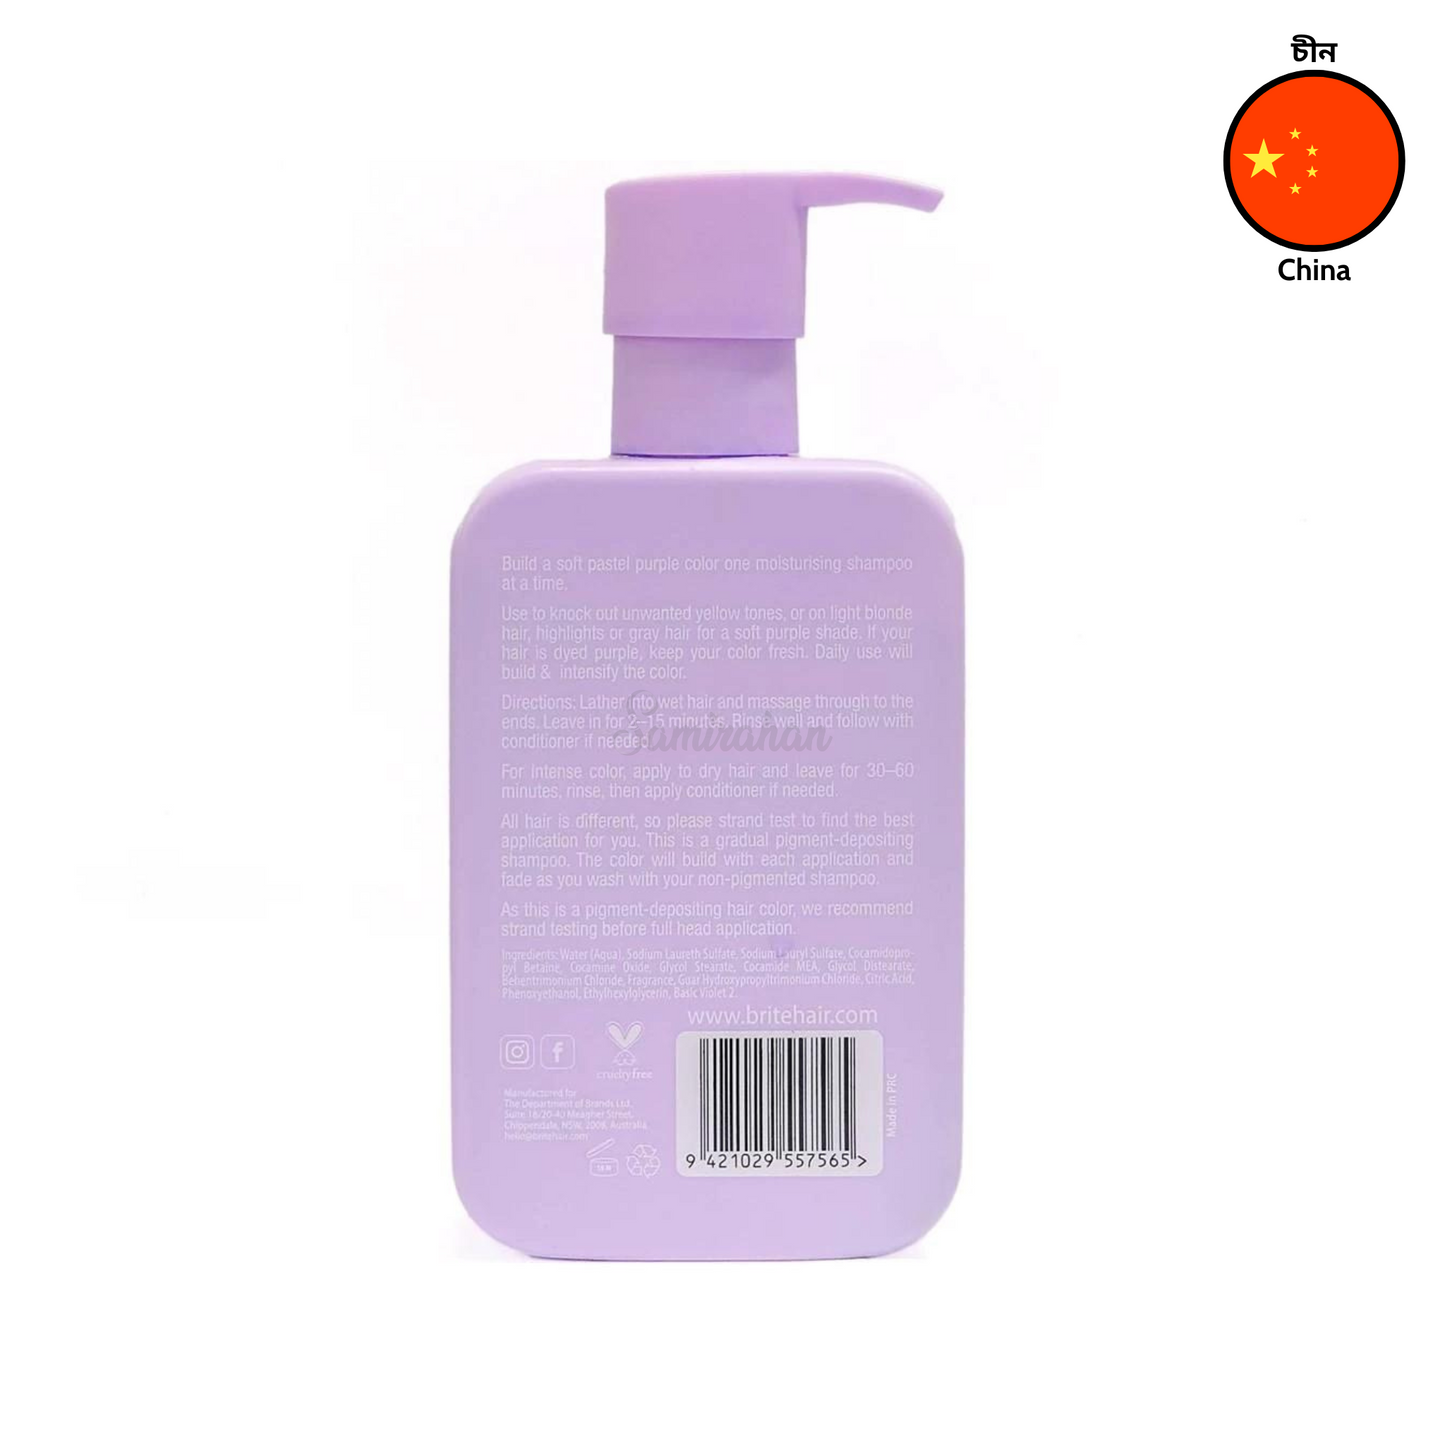 Brite Shampoo Color Pastel Purple 300mL